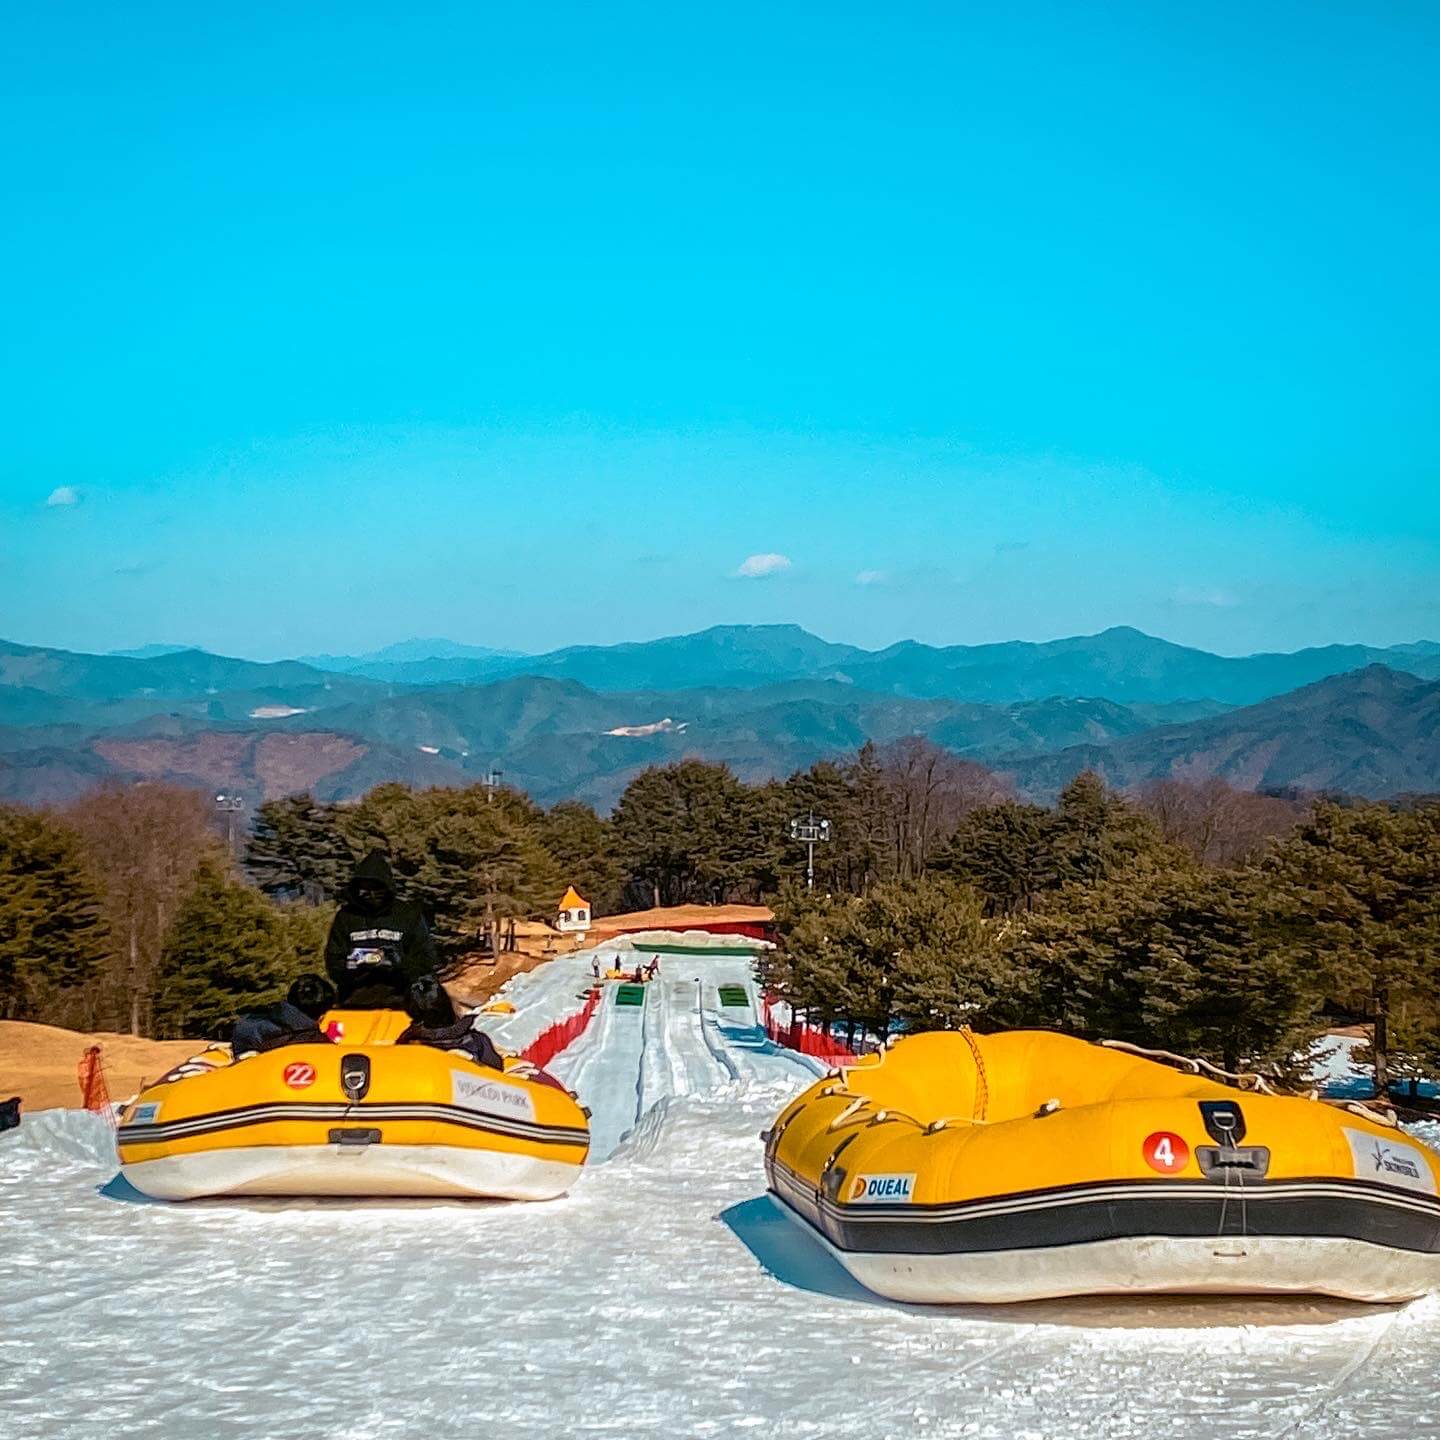 ski resorts near seoul | snowyland rafting sled hill at vivaldi park